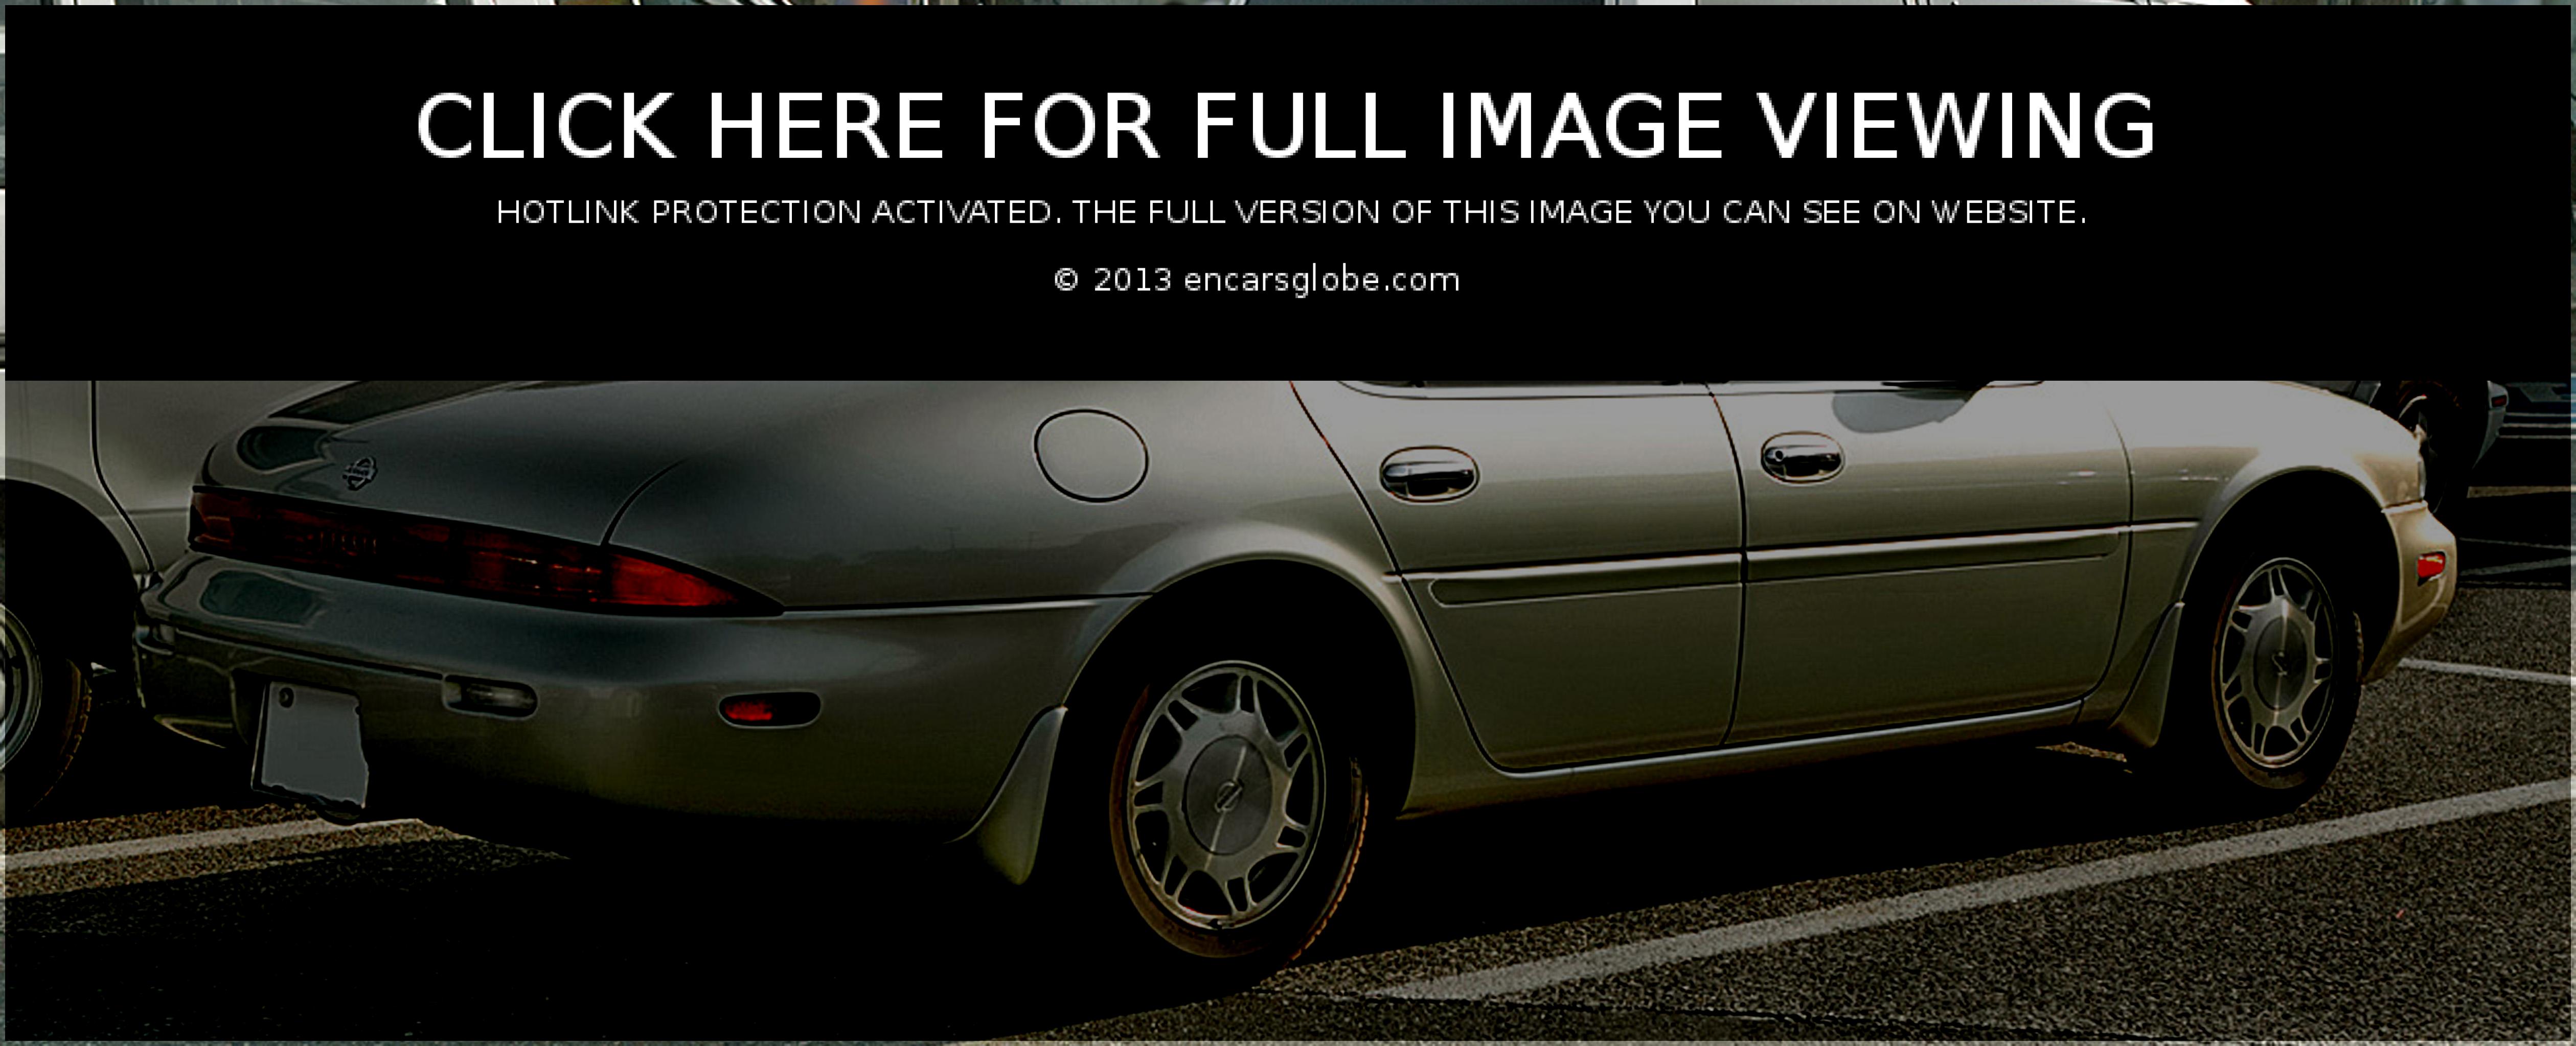 Galerie de photos Nissan Leopard J.Ferie: Photo #01 sur 10, Image...